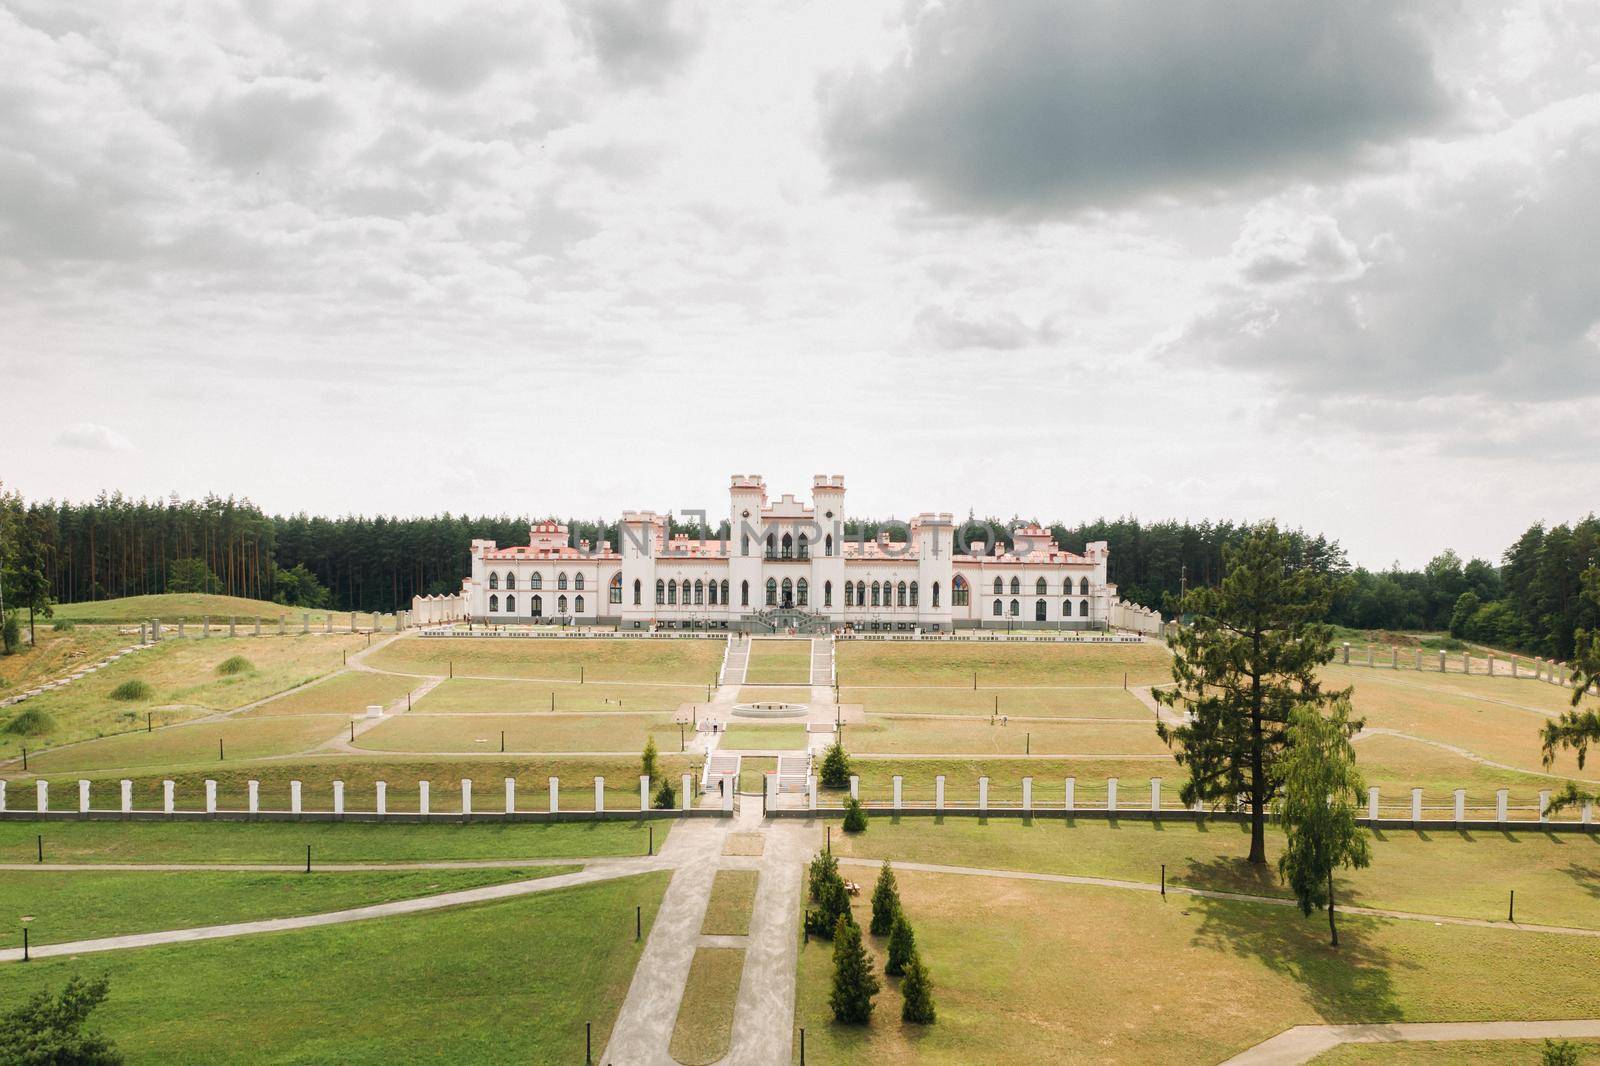 Summer Kossovsky Castle in Belarus.Puslovsky Palace by Lobachad